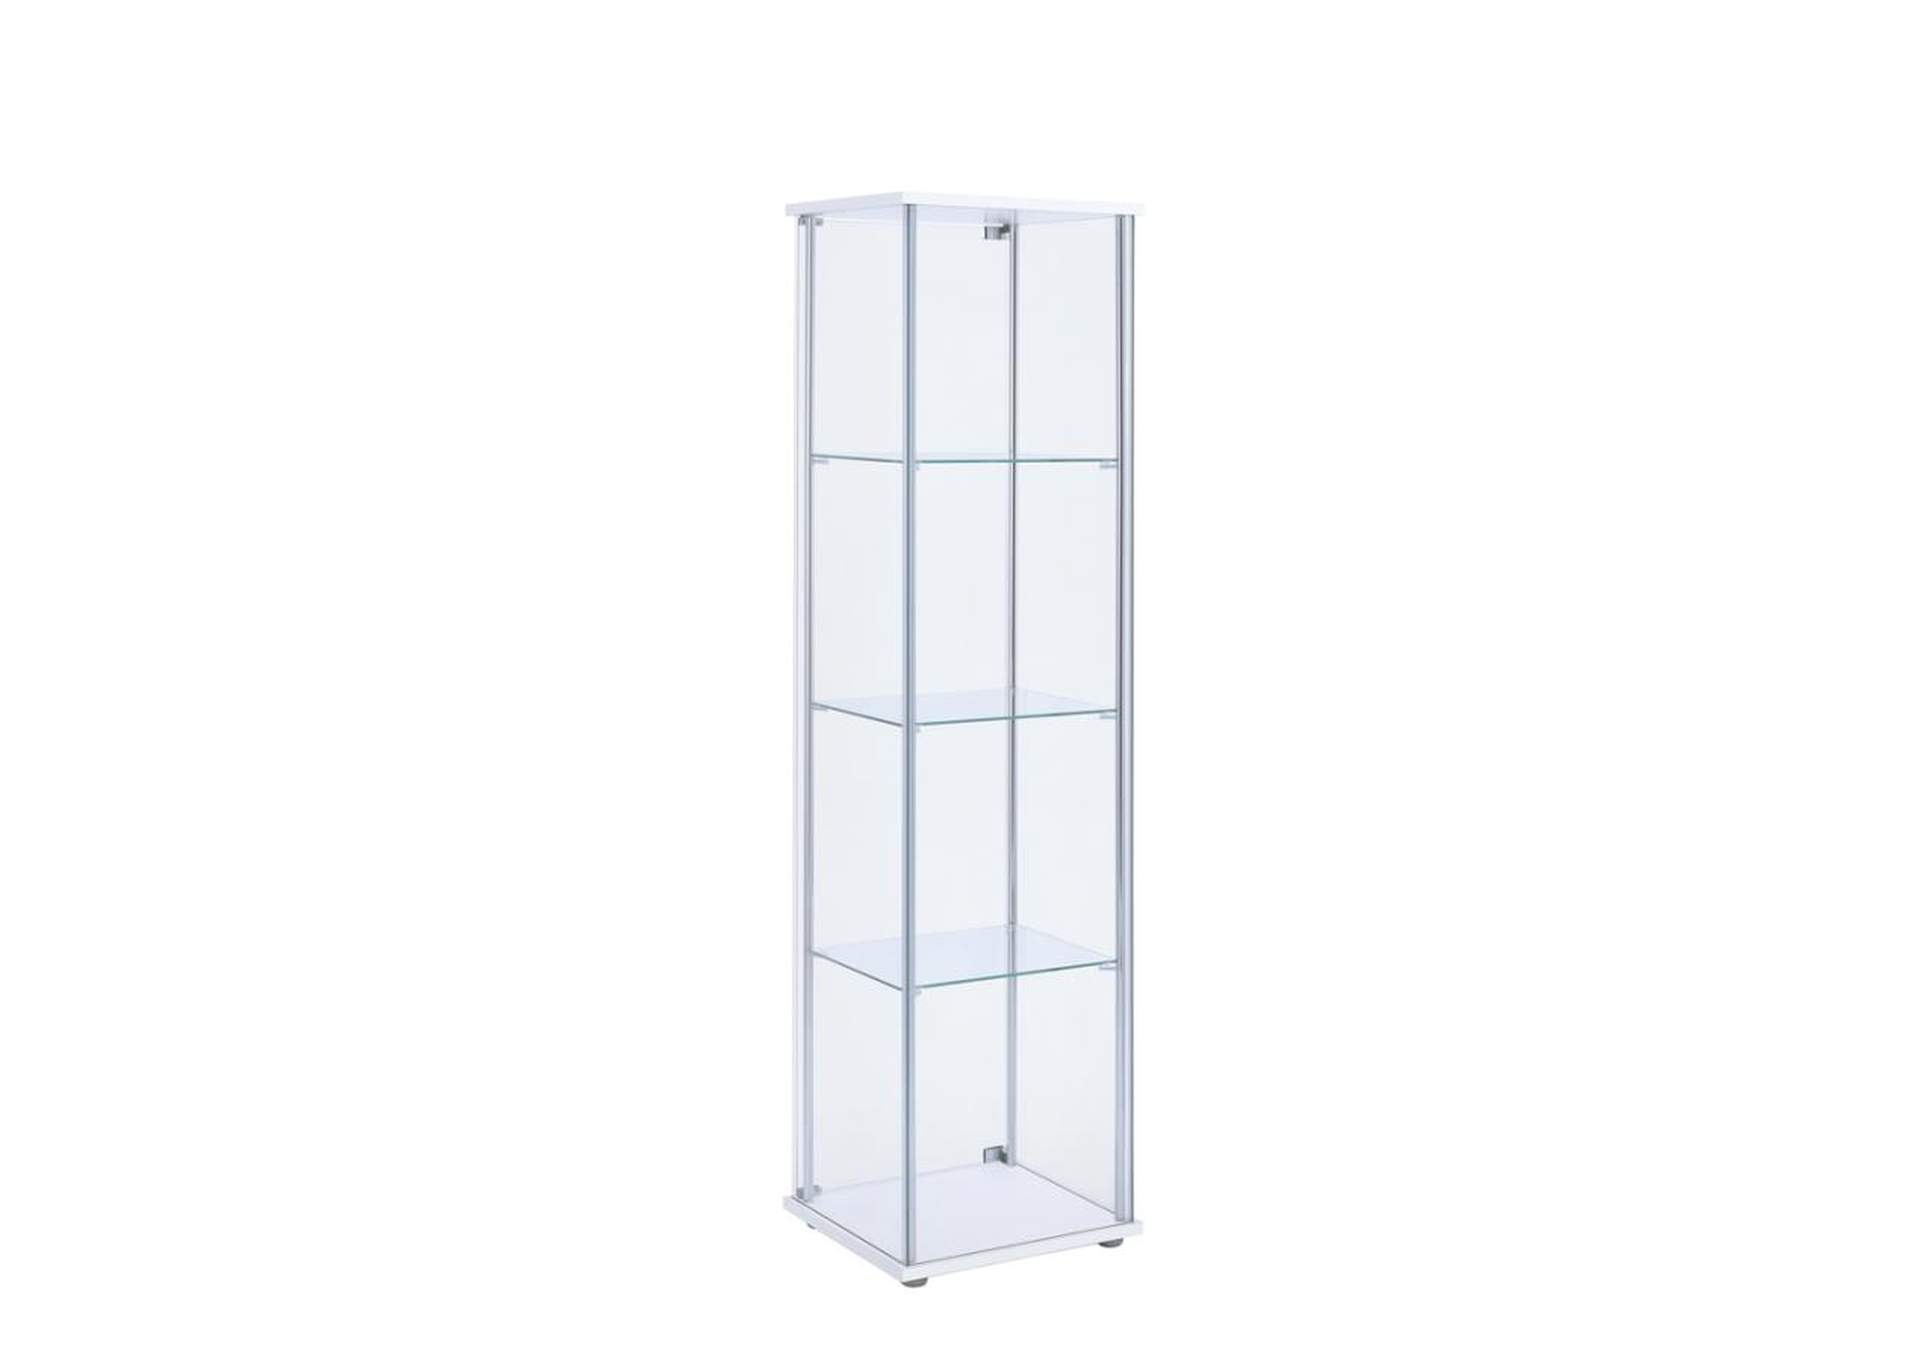 Bellatrix Rectangular 4-shelf Curio Cabinet White and Clear,Coaster Furniture